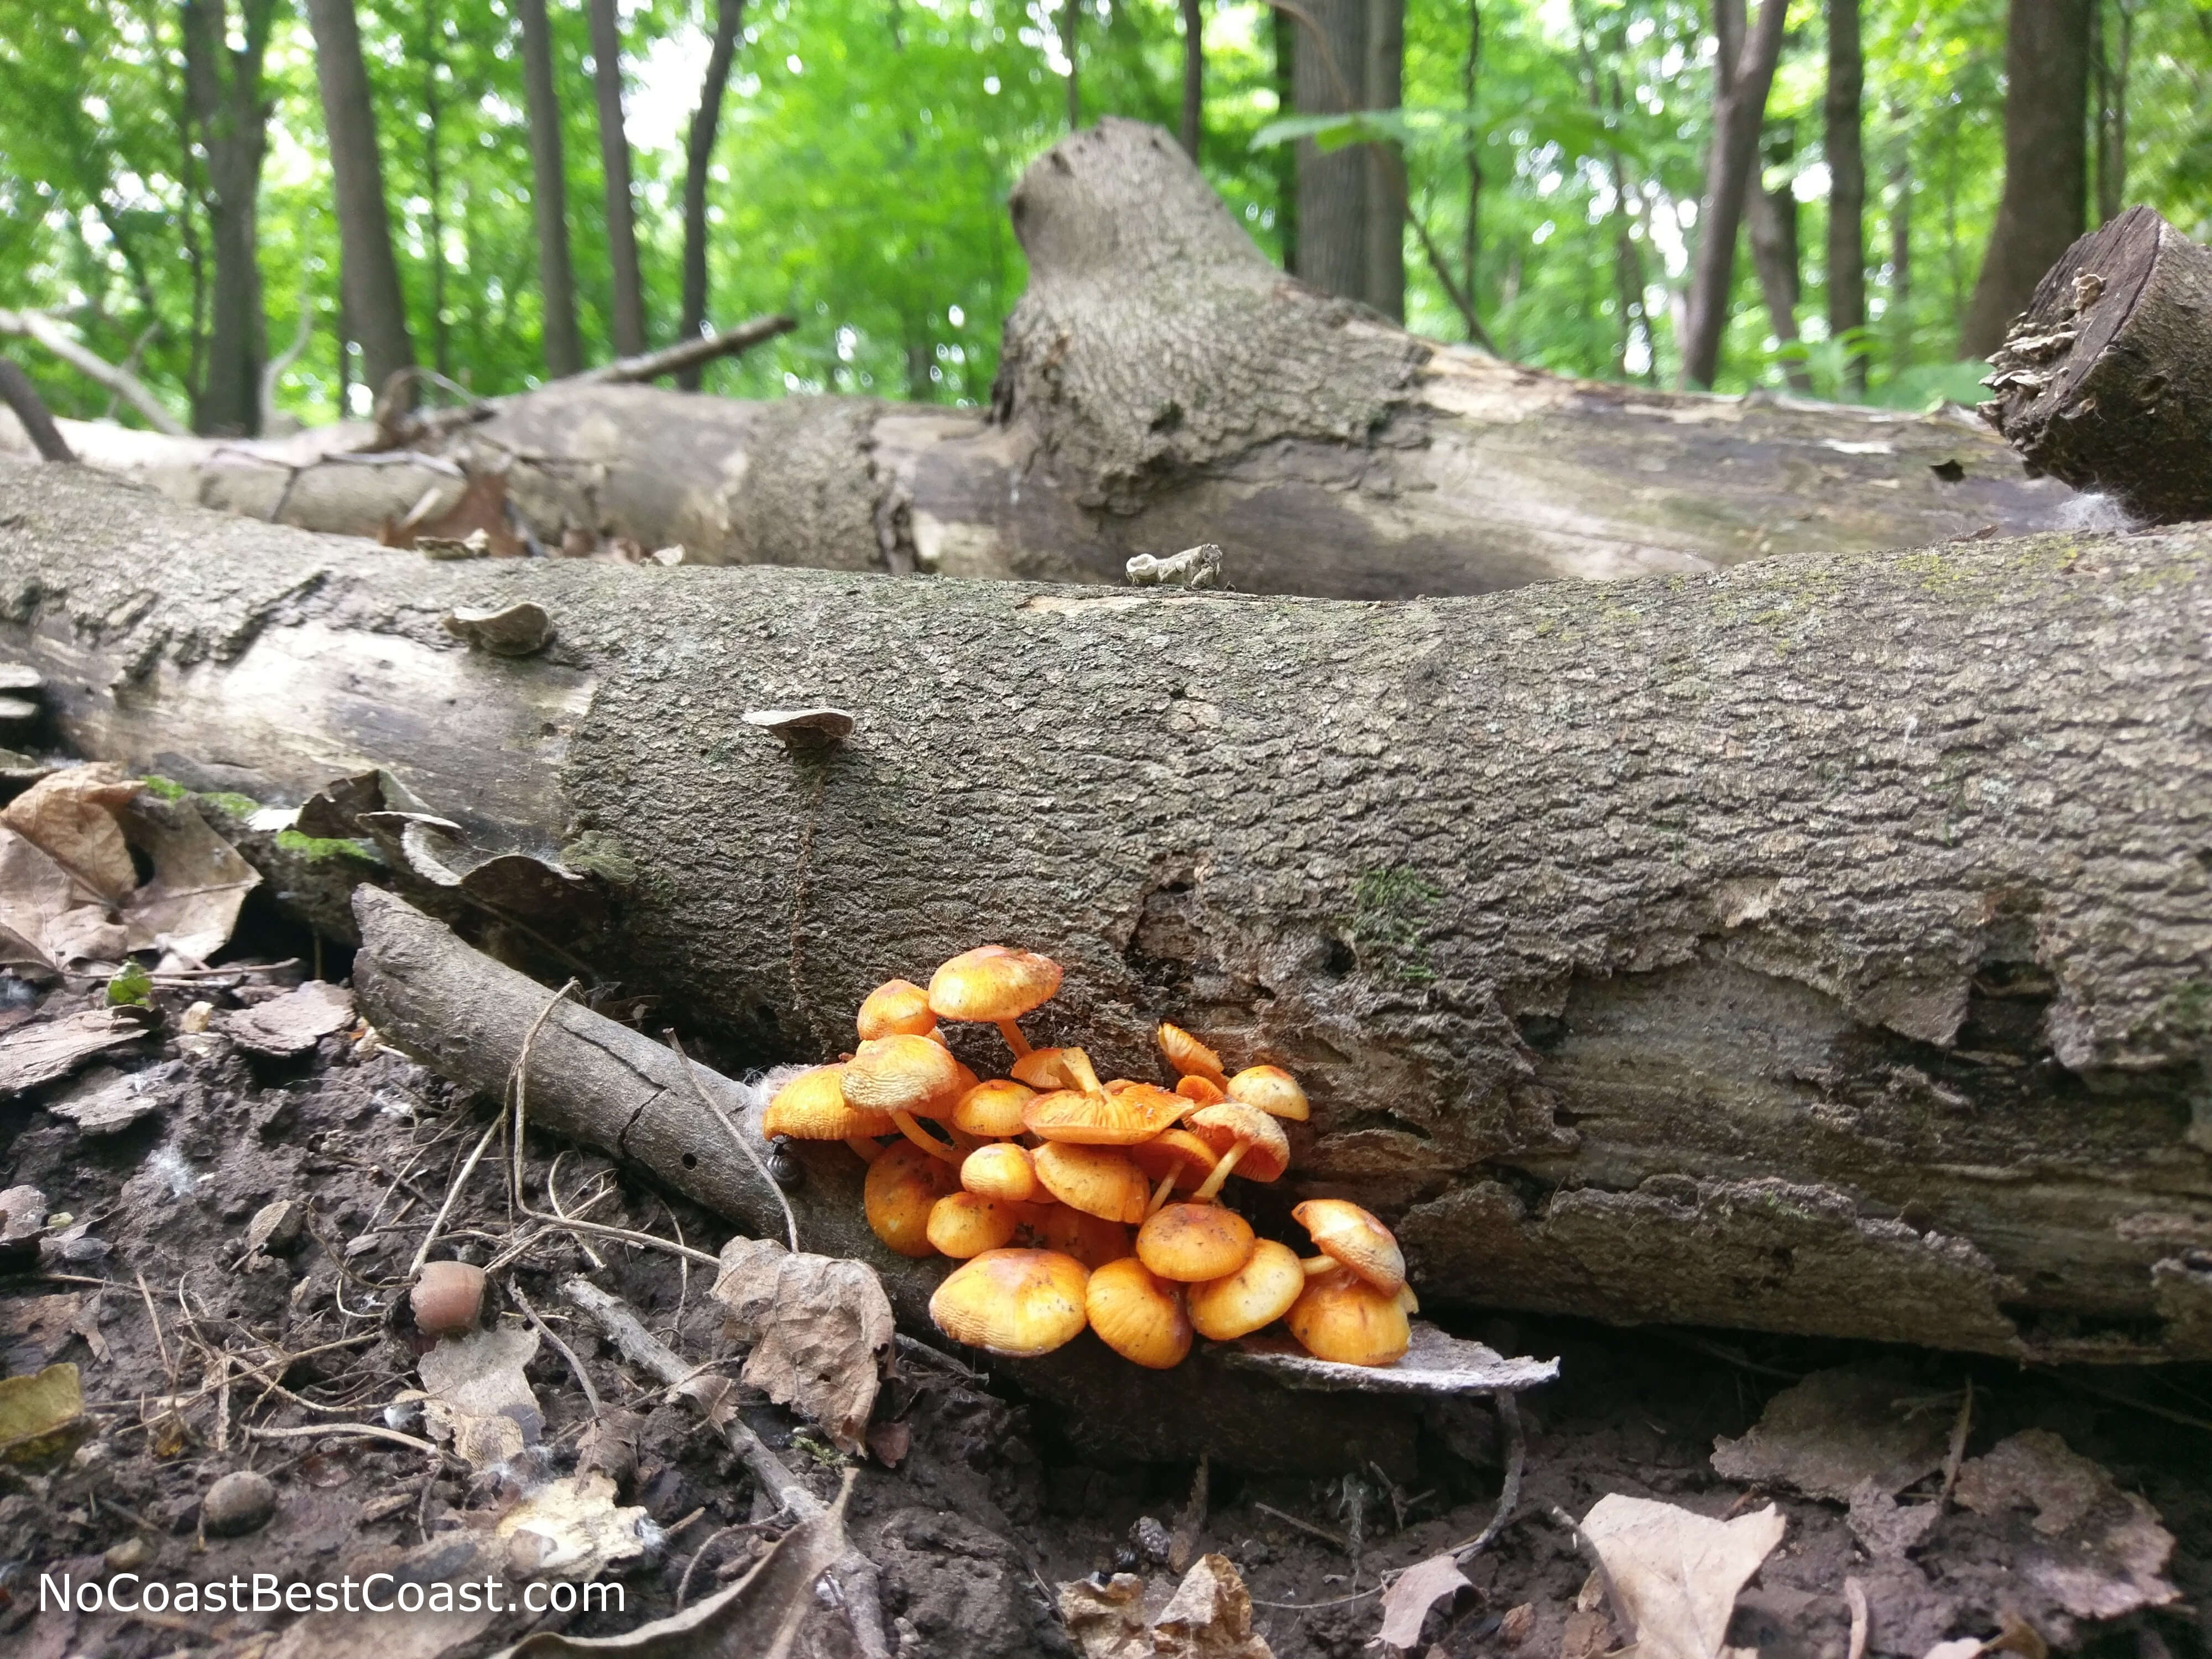 Fungus growing on a fallen tree